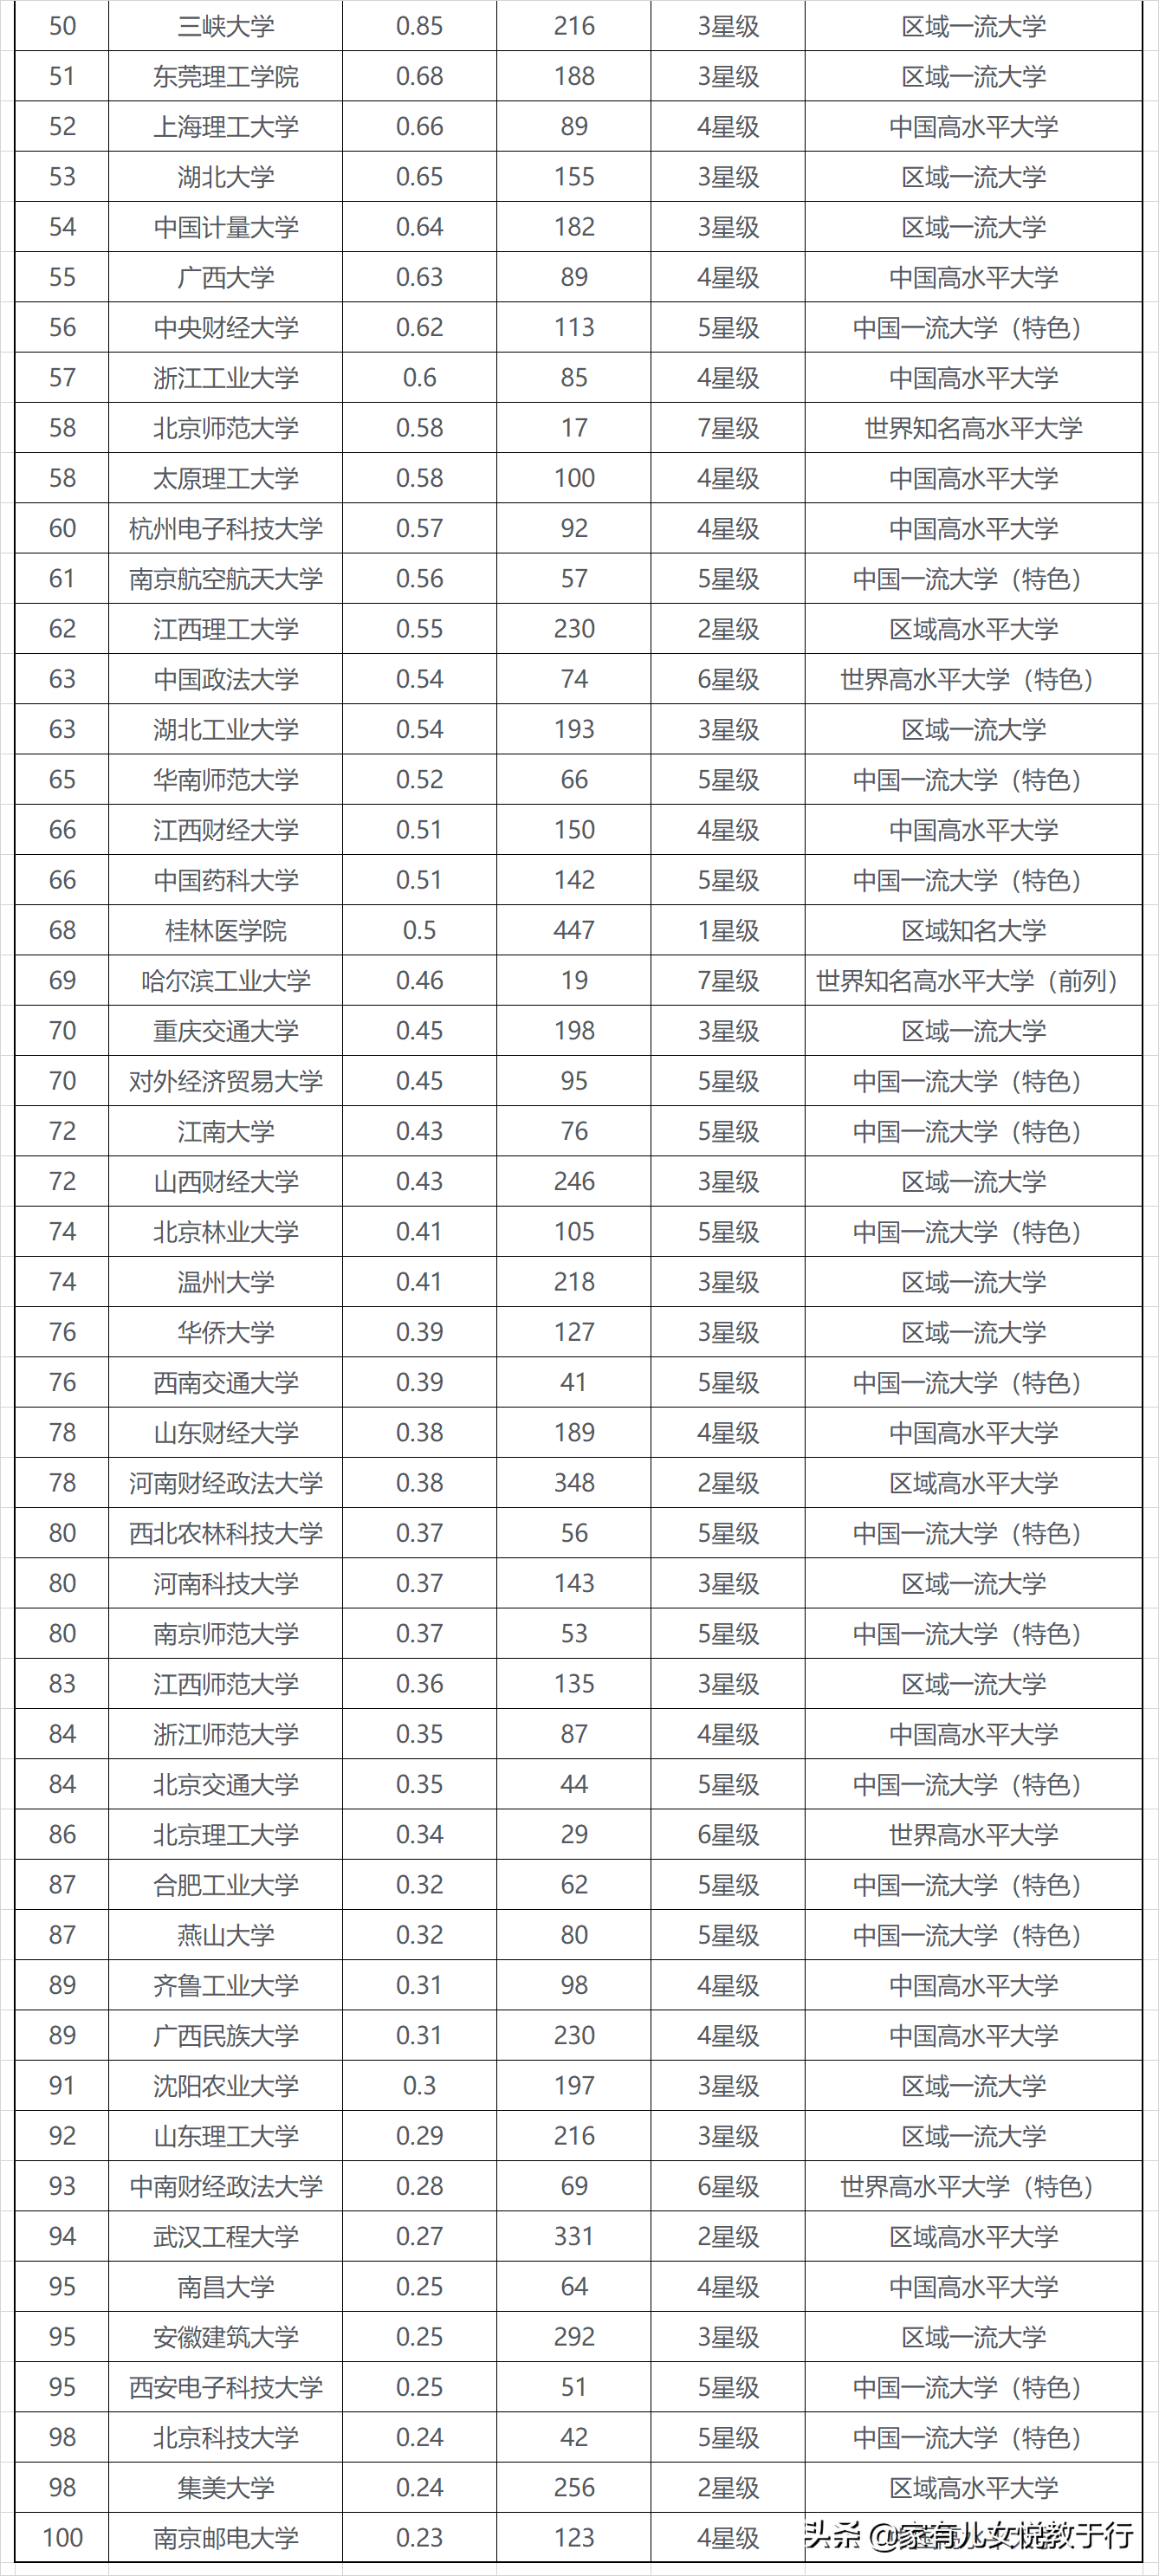 一网打尽:中国大学10大排行榜汇总,提供全方位高考志愿填报参考 –